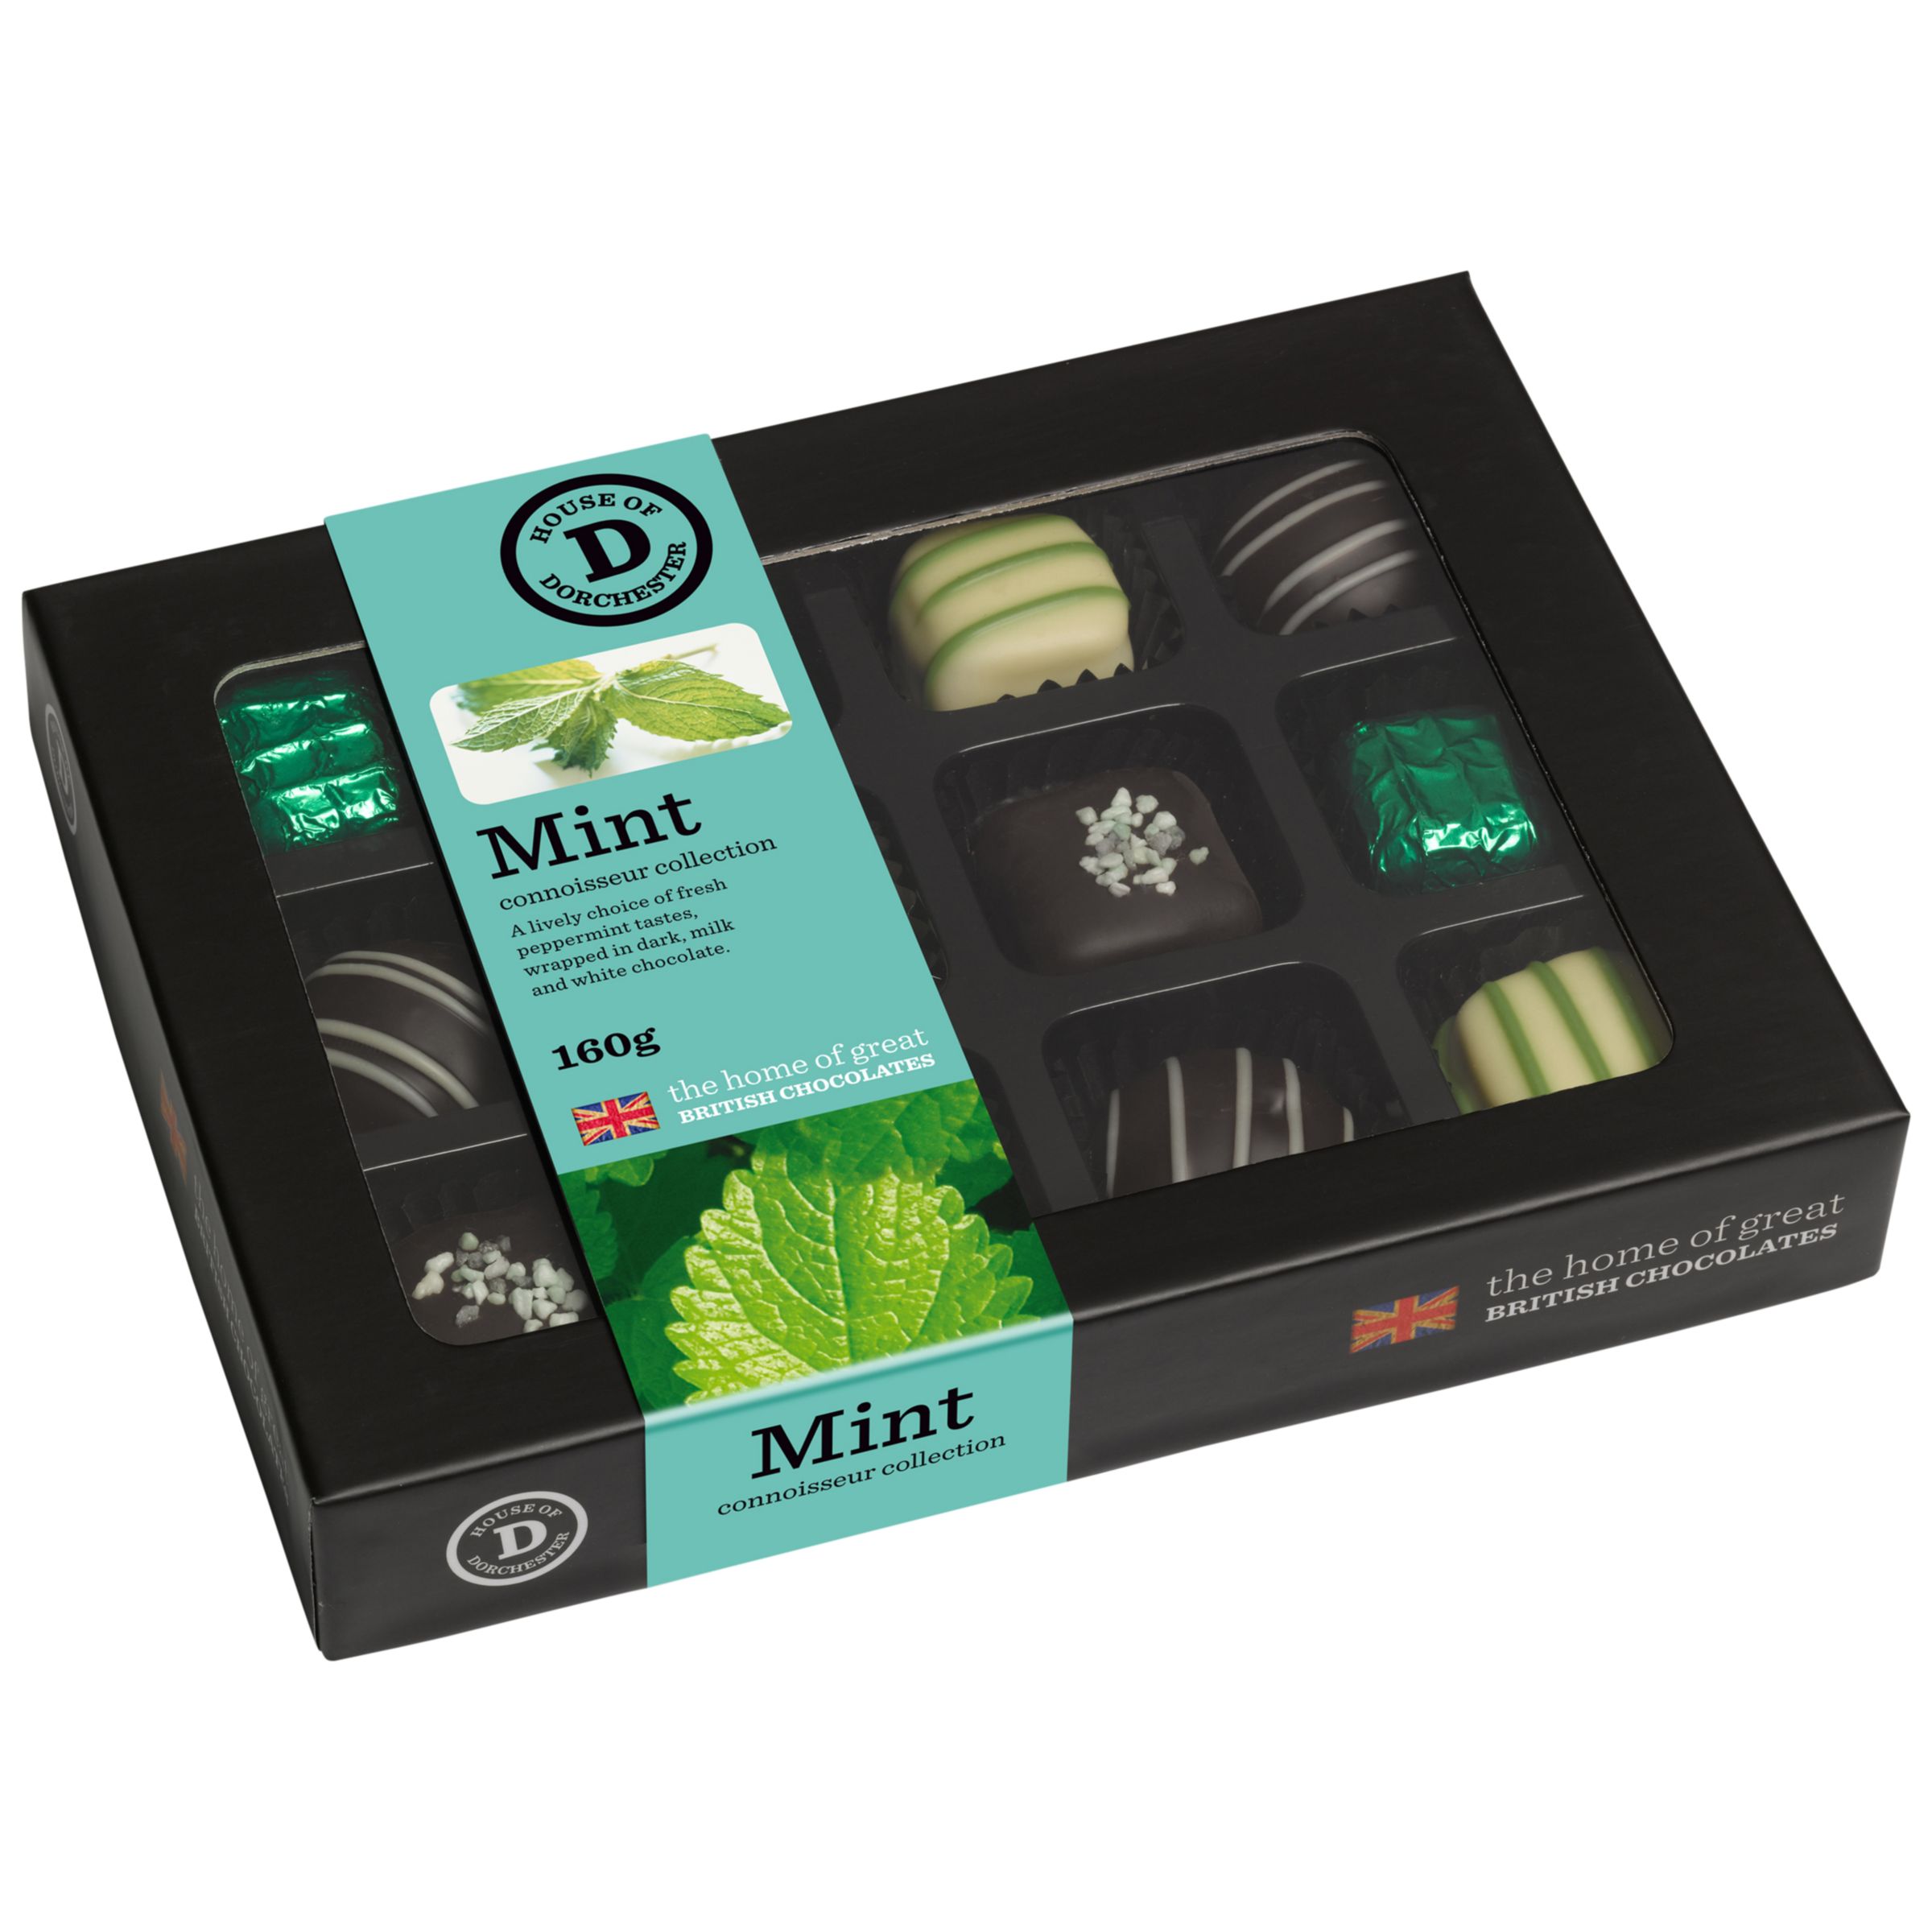 Mint Connoisseur Collection,